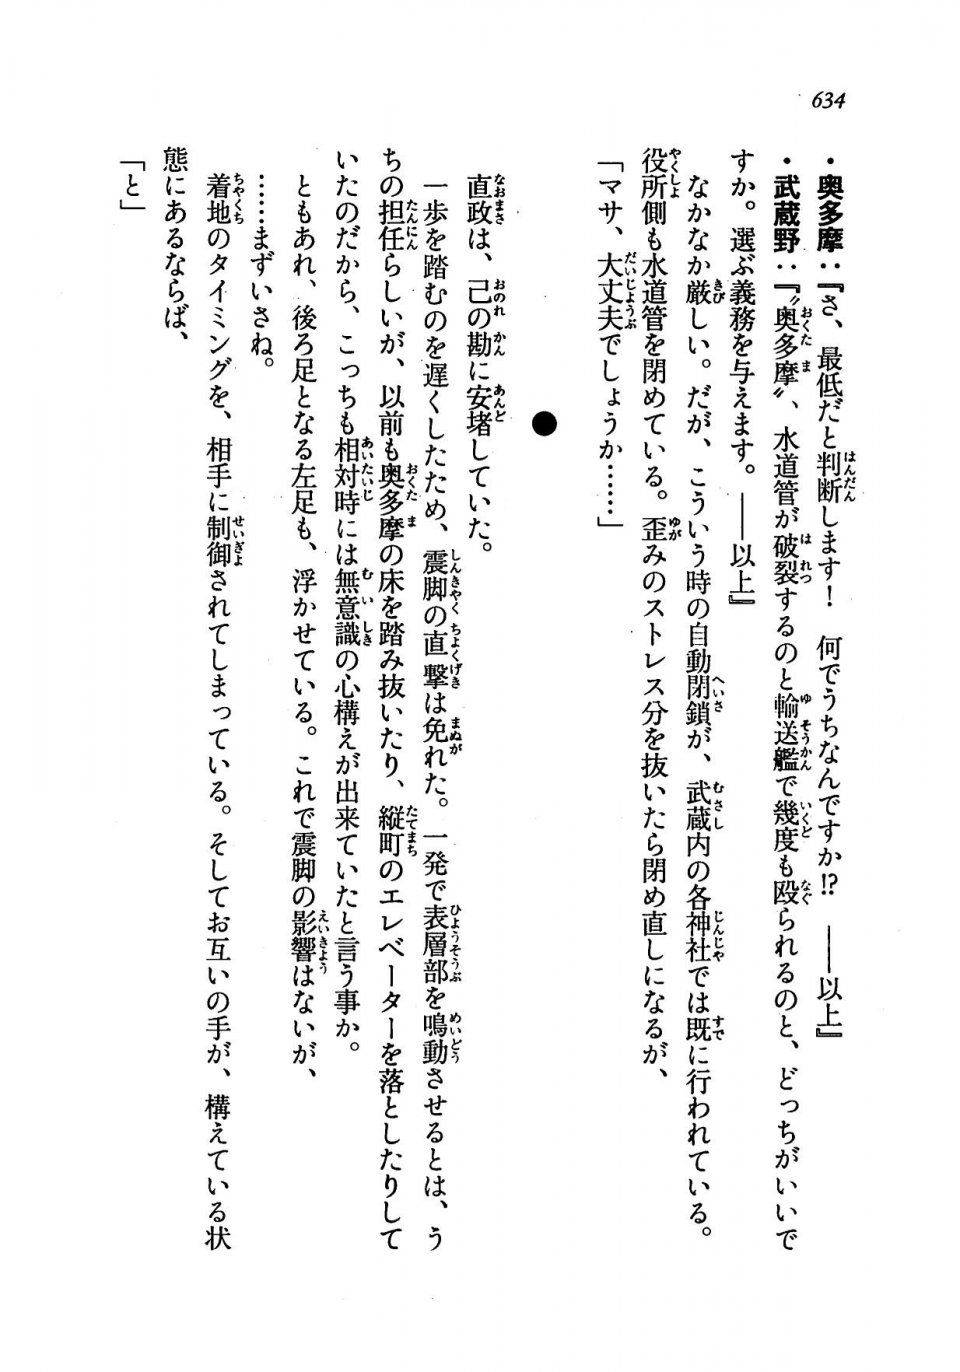 Kyoukai Senjou no Horizon LN Vol 19(8A) - Photo #634